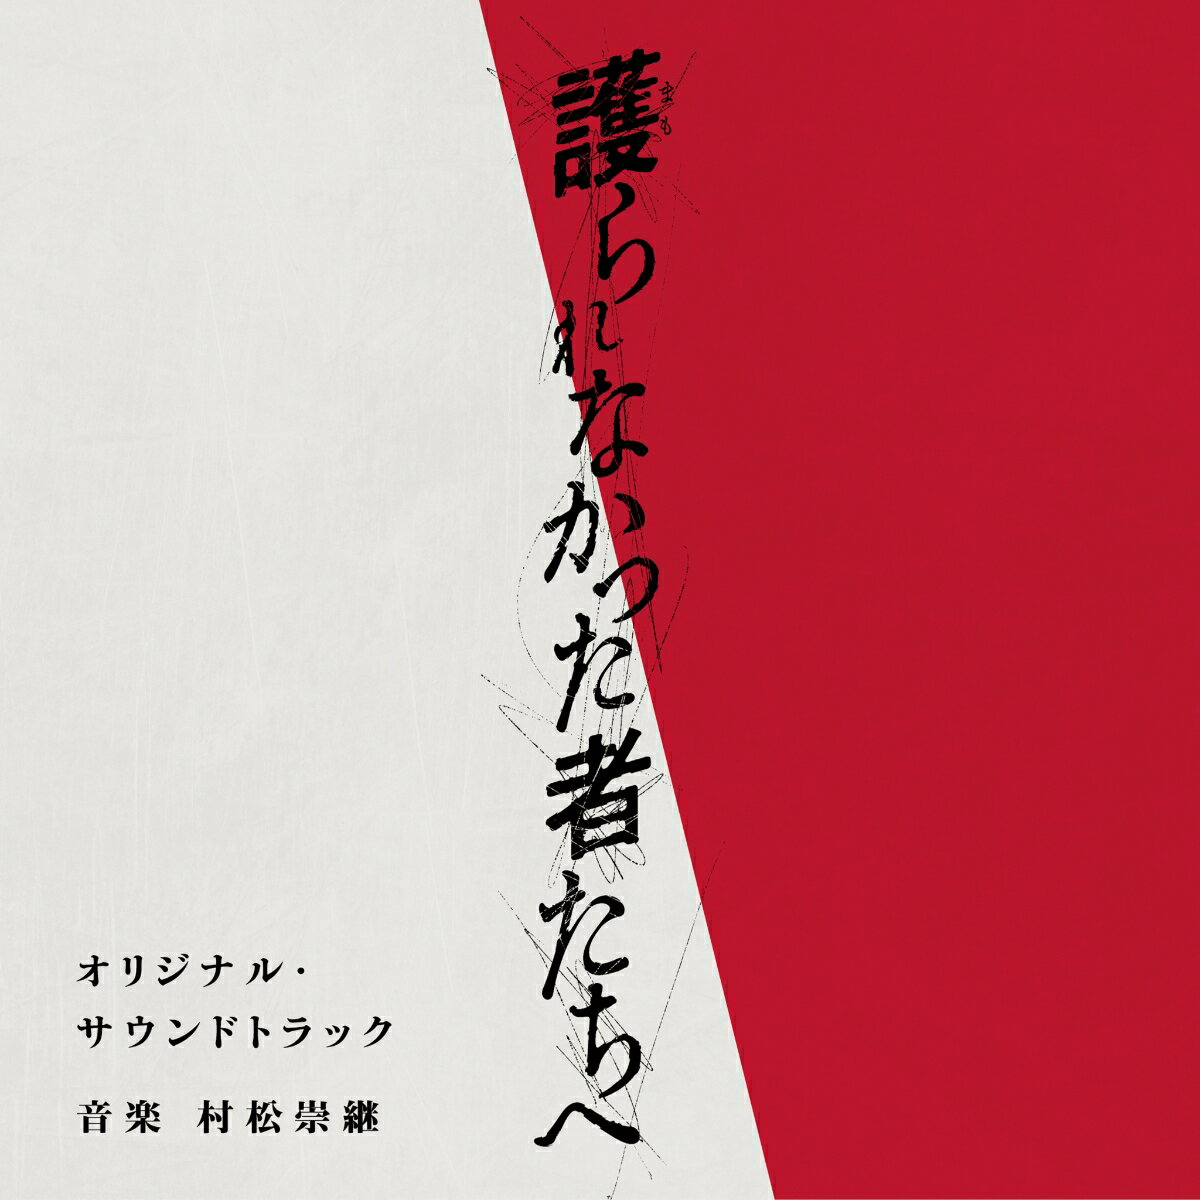 佐藤健×阿部寛×瀬々敬久監督（「64-ロクヨン」）
日本映画界最高峰のキャスト・スタッフが贈る、ヒューマン・ミステリー、映画「護られなかった者たちへ」
（2021年10月1日公開）のオリジナル・サウンドトラックのリリースが決定！

音楽を担当するのは、映画「64-ロクヨン」「8年越しの花嫁」など数々のヒット映画や、
竹内まりや「いのちの歌」、更には「思い出のマーニー」「メアリと魔女の花」などのスタジオジブリ作品など、
劇伴からアーティストへの楽曲提供まで、幅広く活躍する作曲家・村松崇継。東日本大震災から10年目の仙台で発生した
不可解な連続殺人事件の裏に隠された切なくも衝撃的な真実を描く、この秋話題の第一級のヒューマンミステリーを、
時に暖かく時に切なく包み込む魂の旋律を余すところなく収録します。